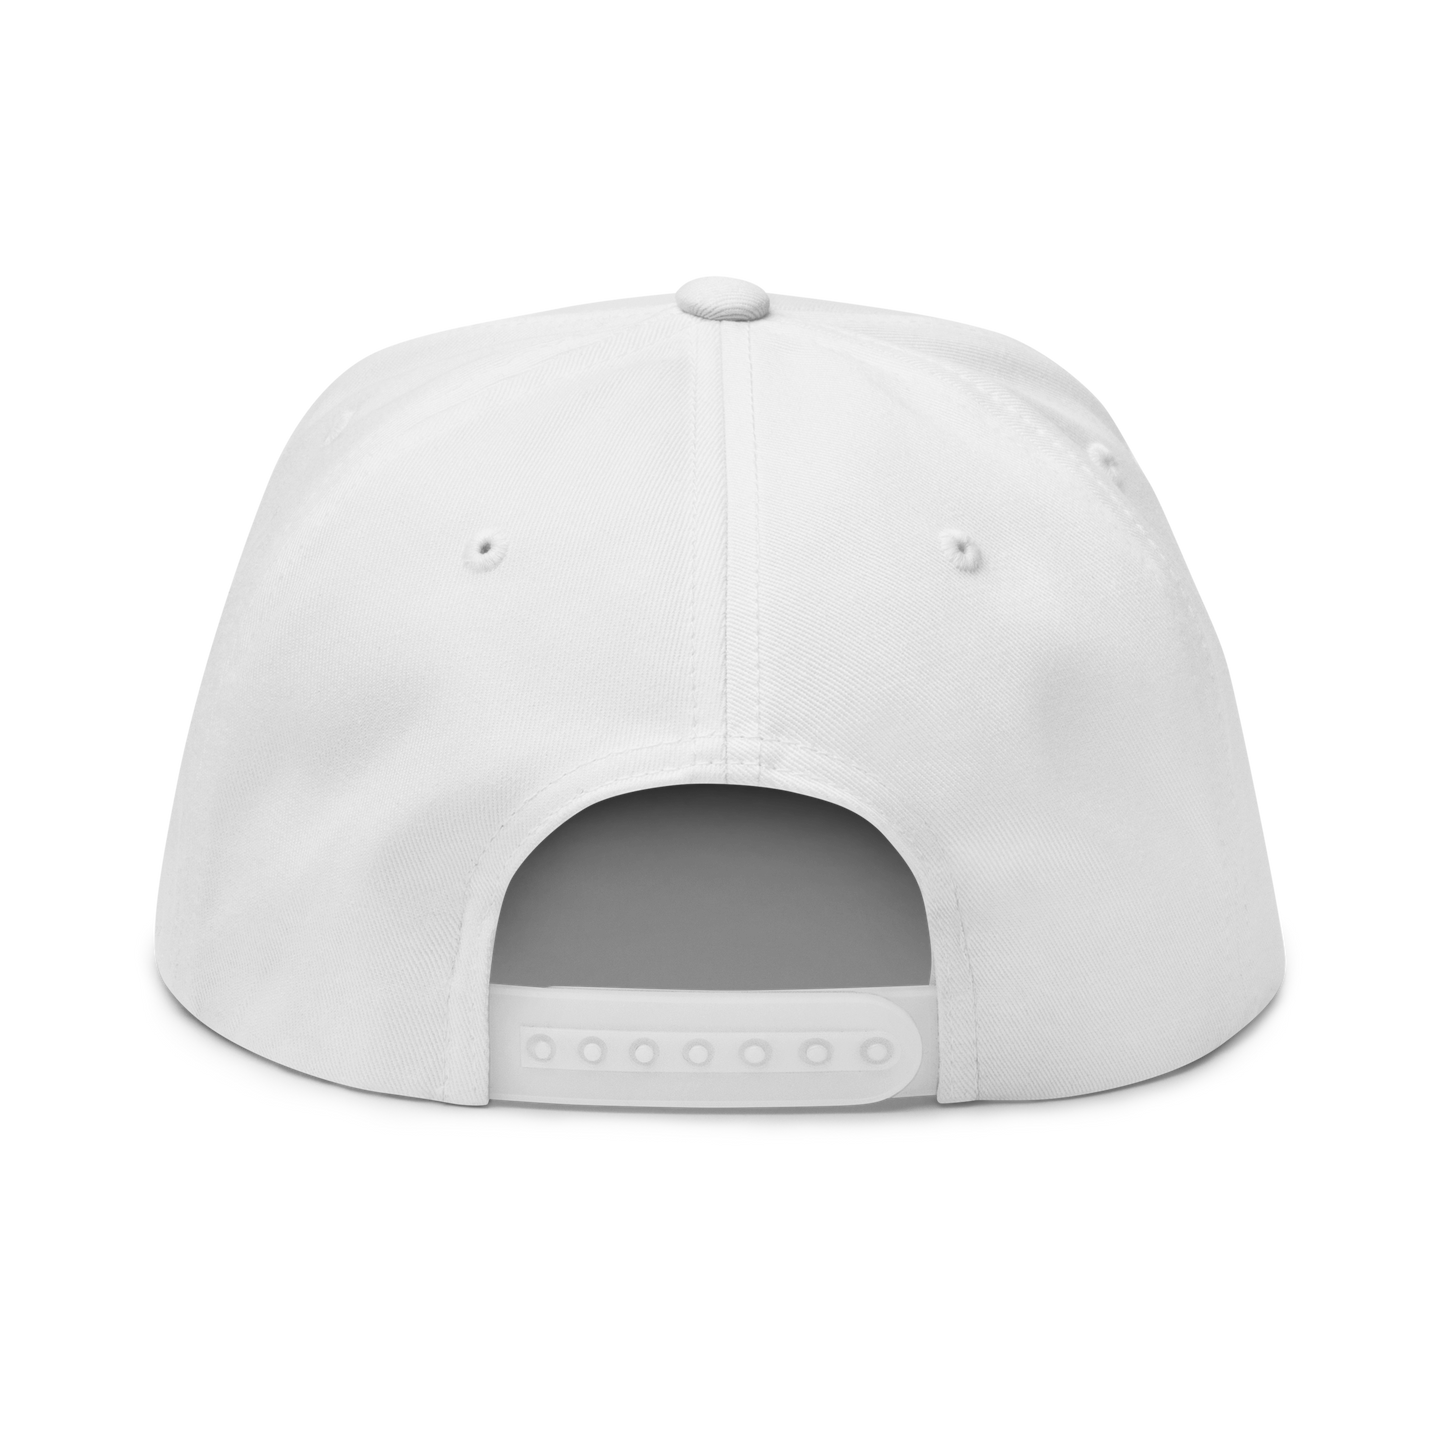 Black Baseball cap